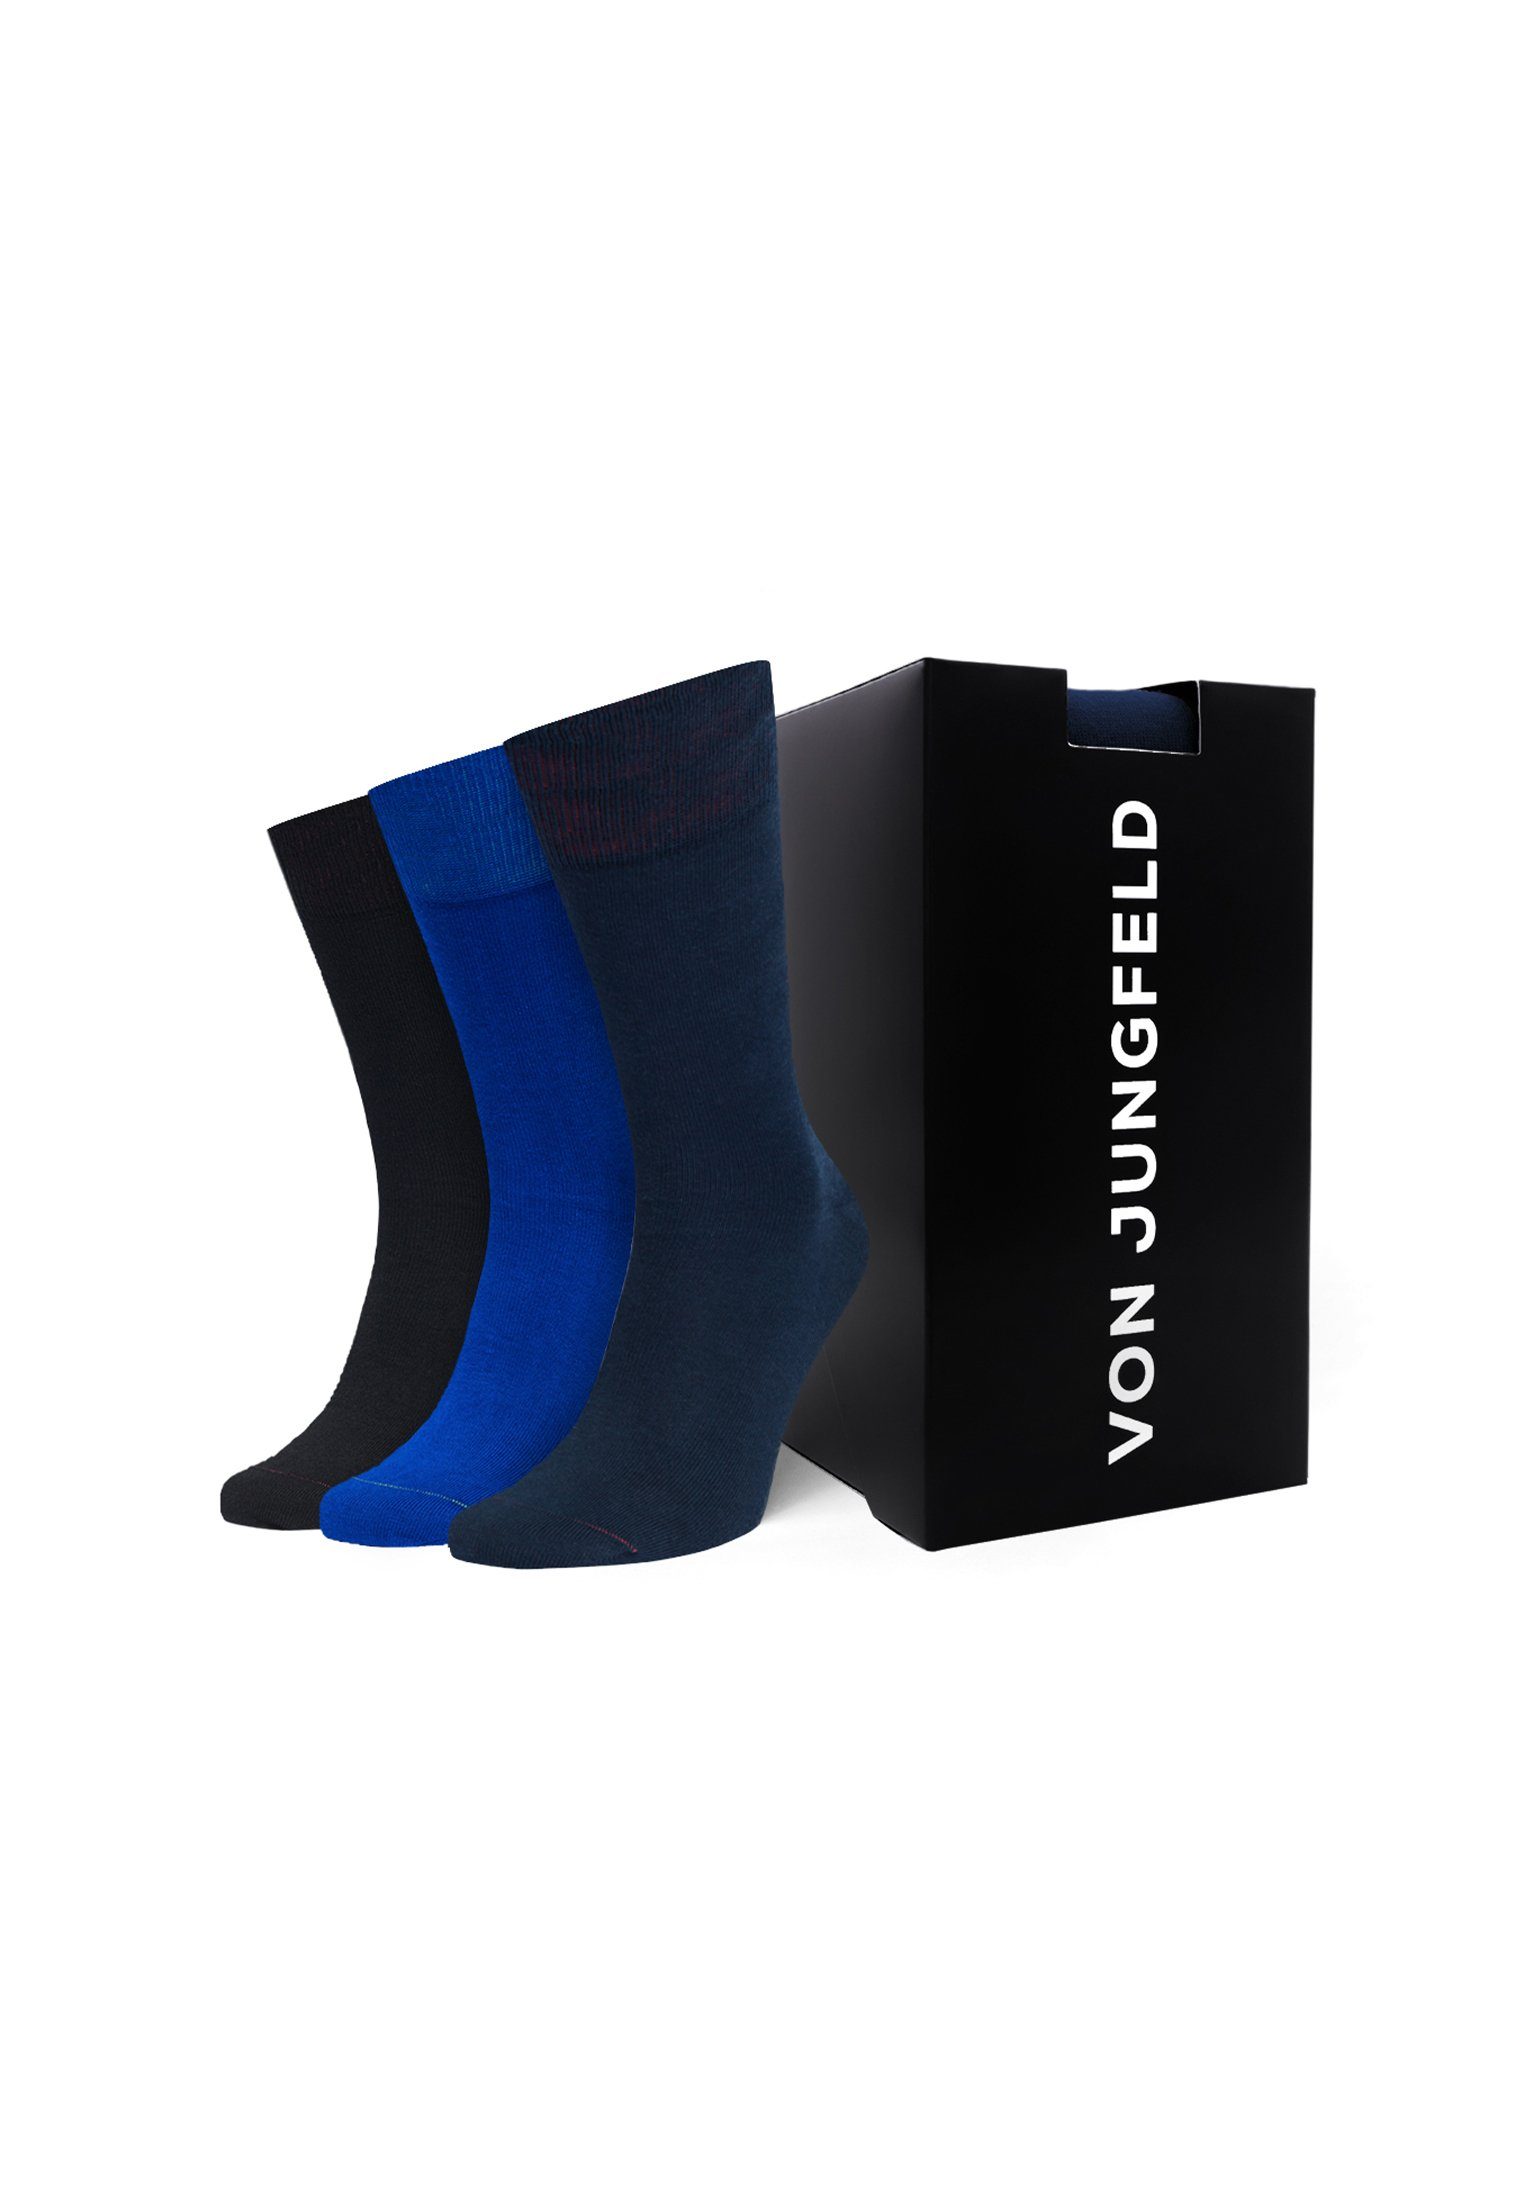 Box Socken von Jungfeld Geschenk